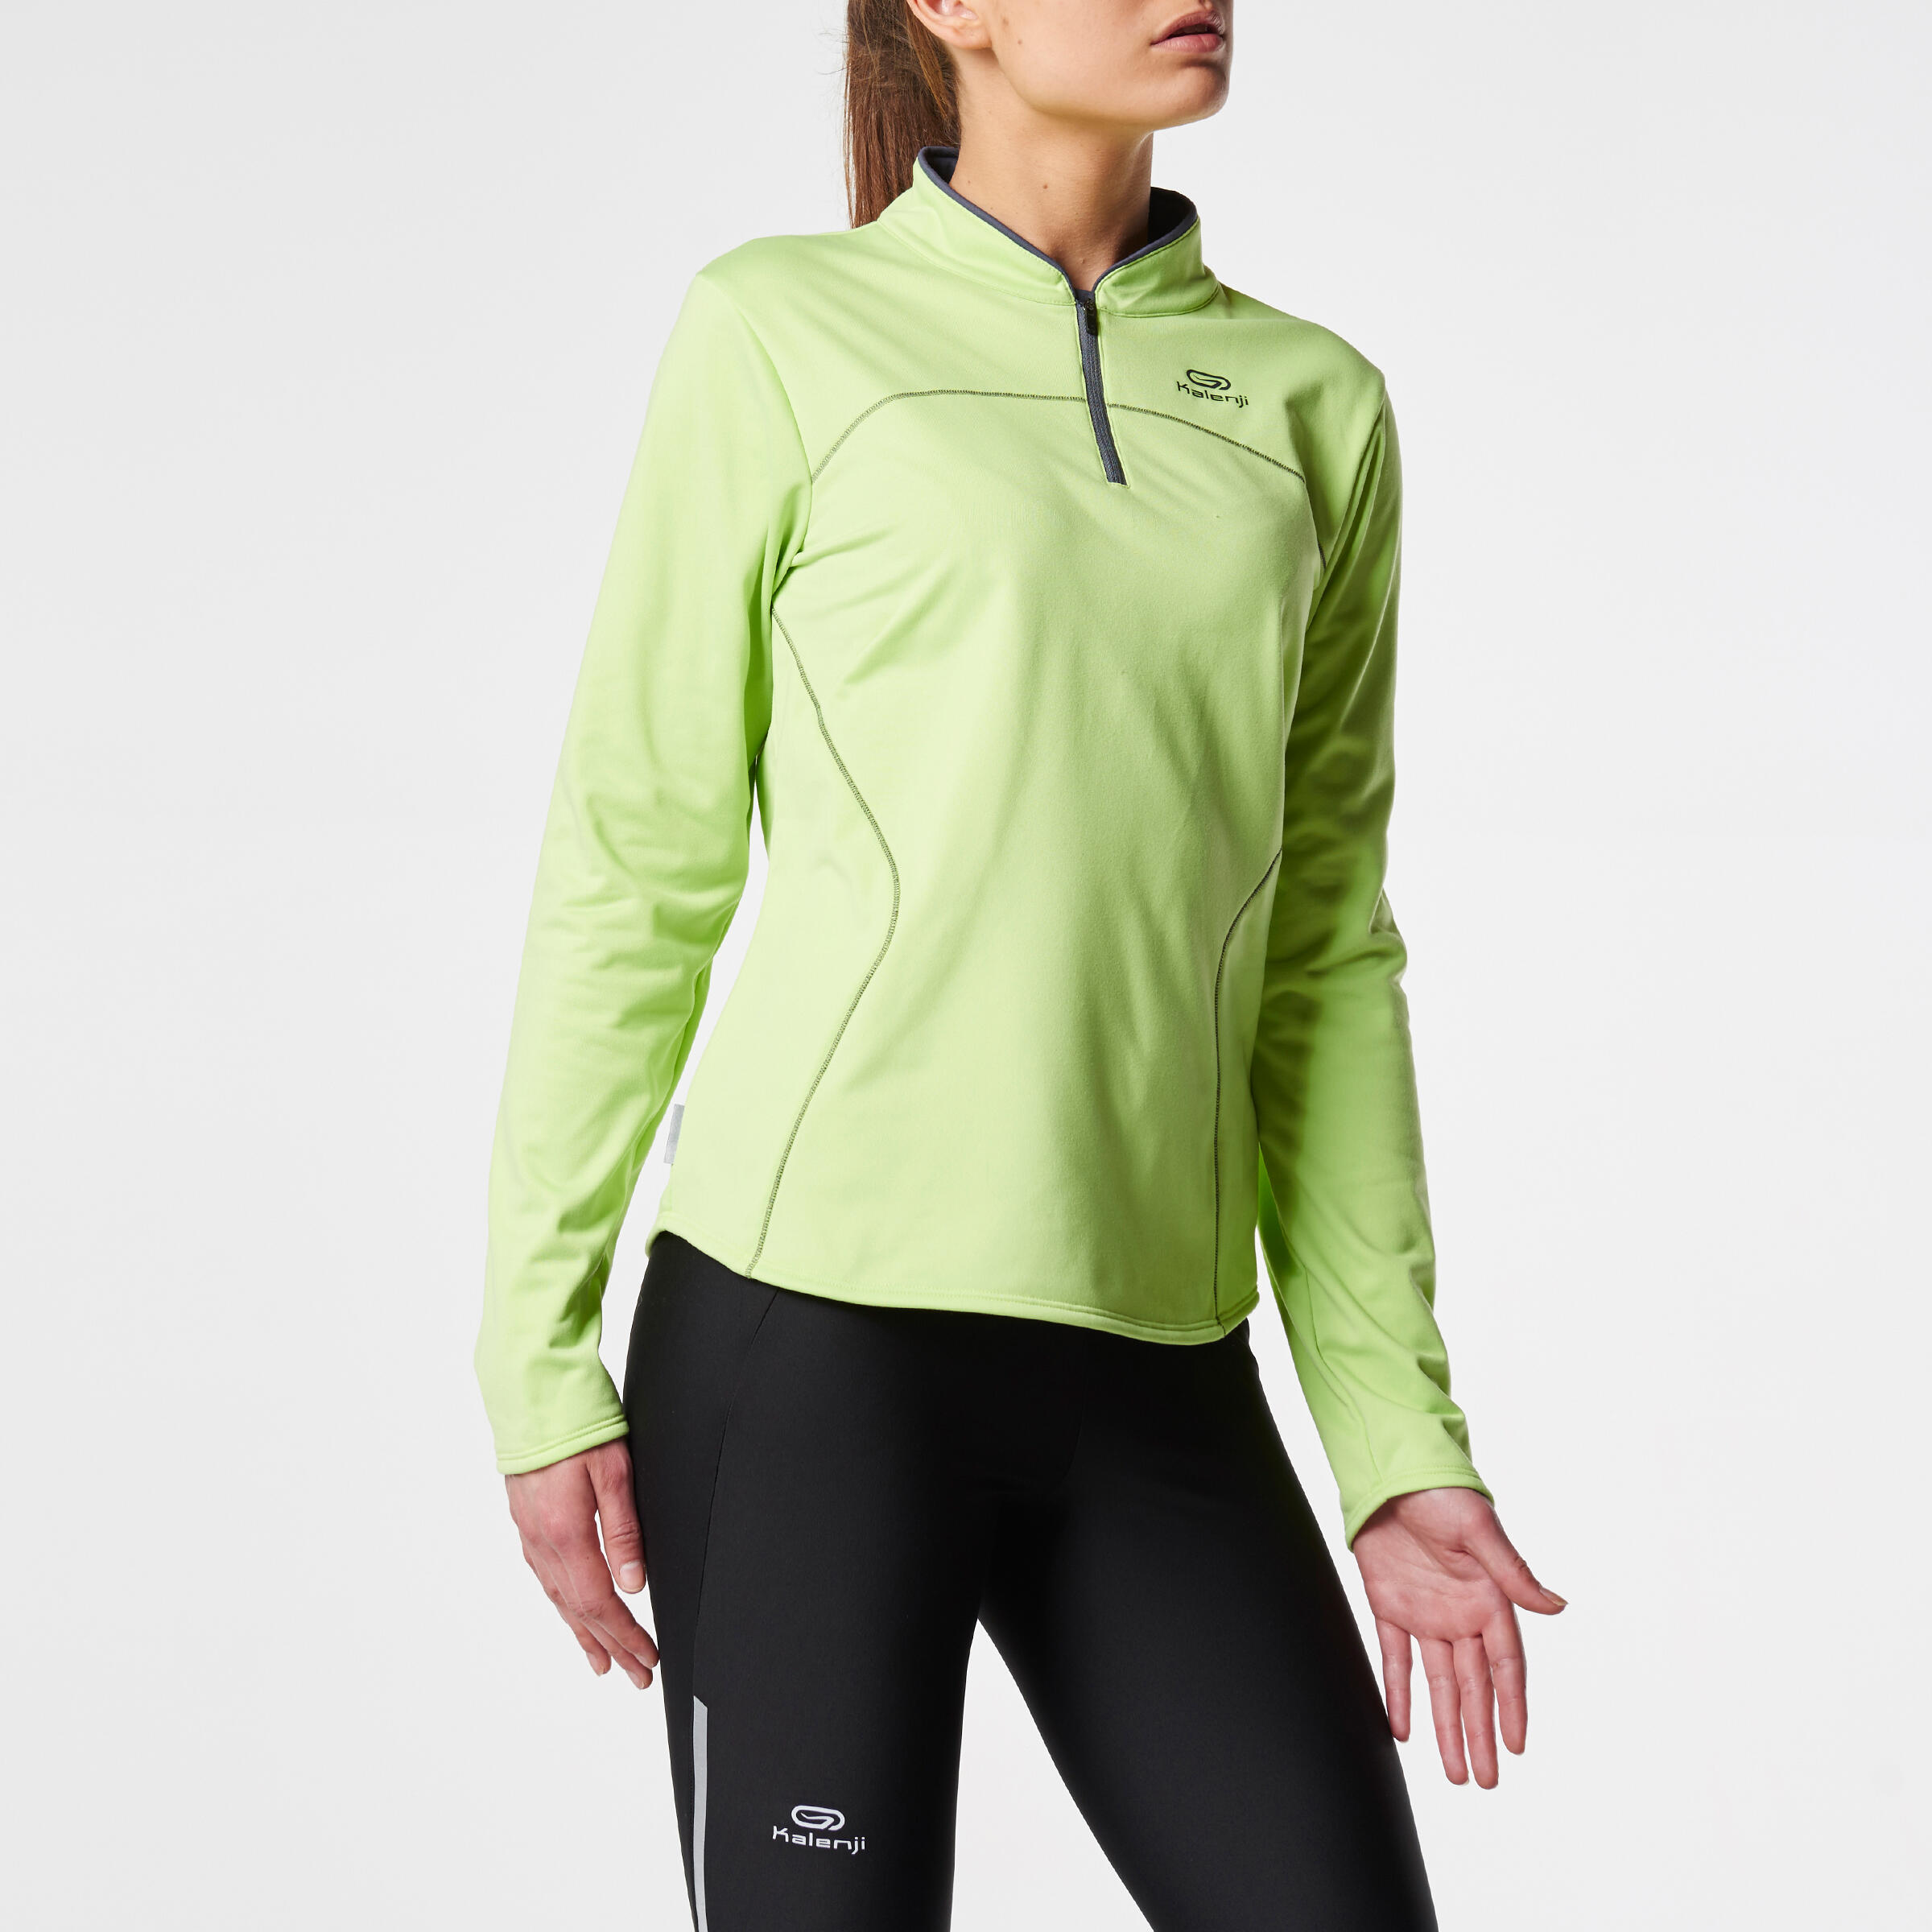 Ekiden Women's Warm Long Sleeved Running Jersey - Green 3/11